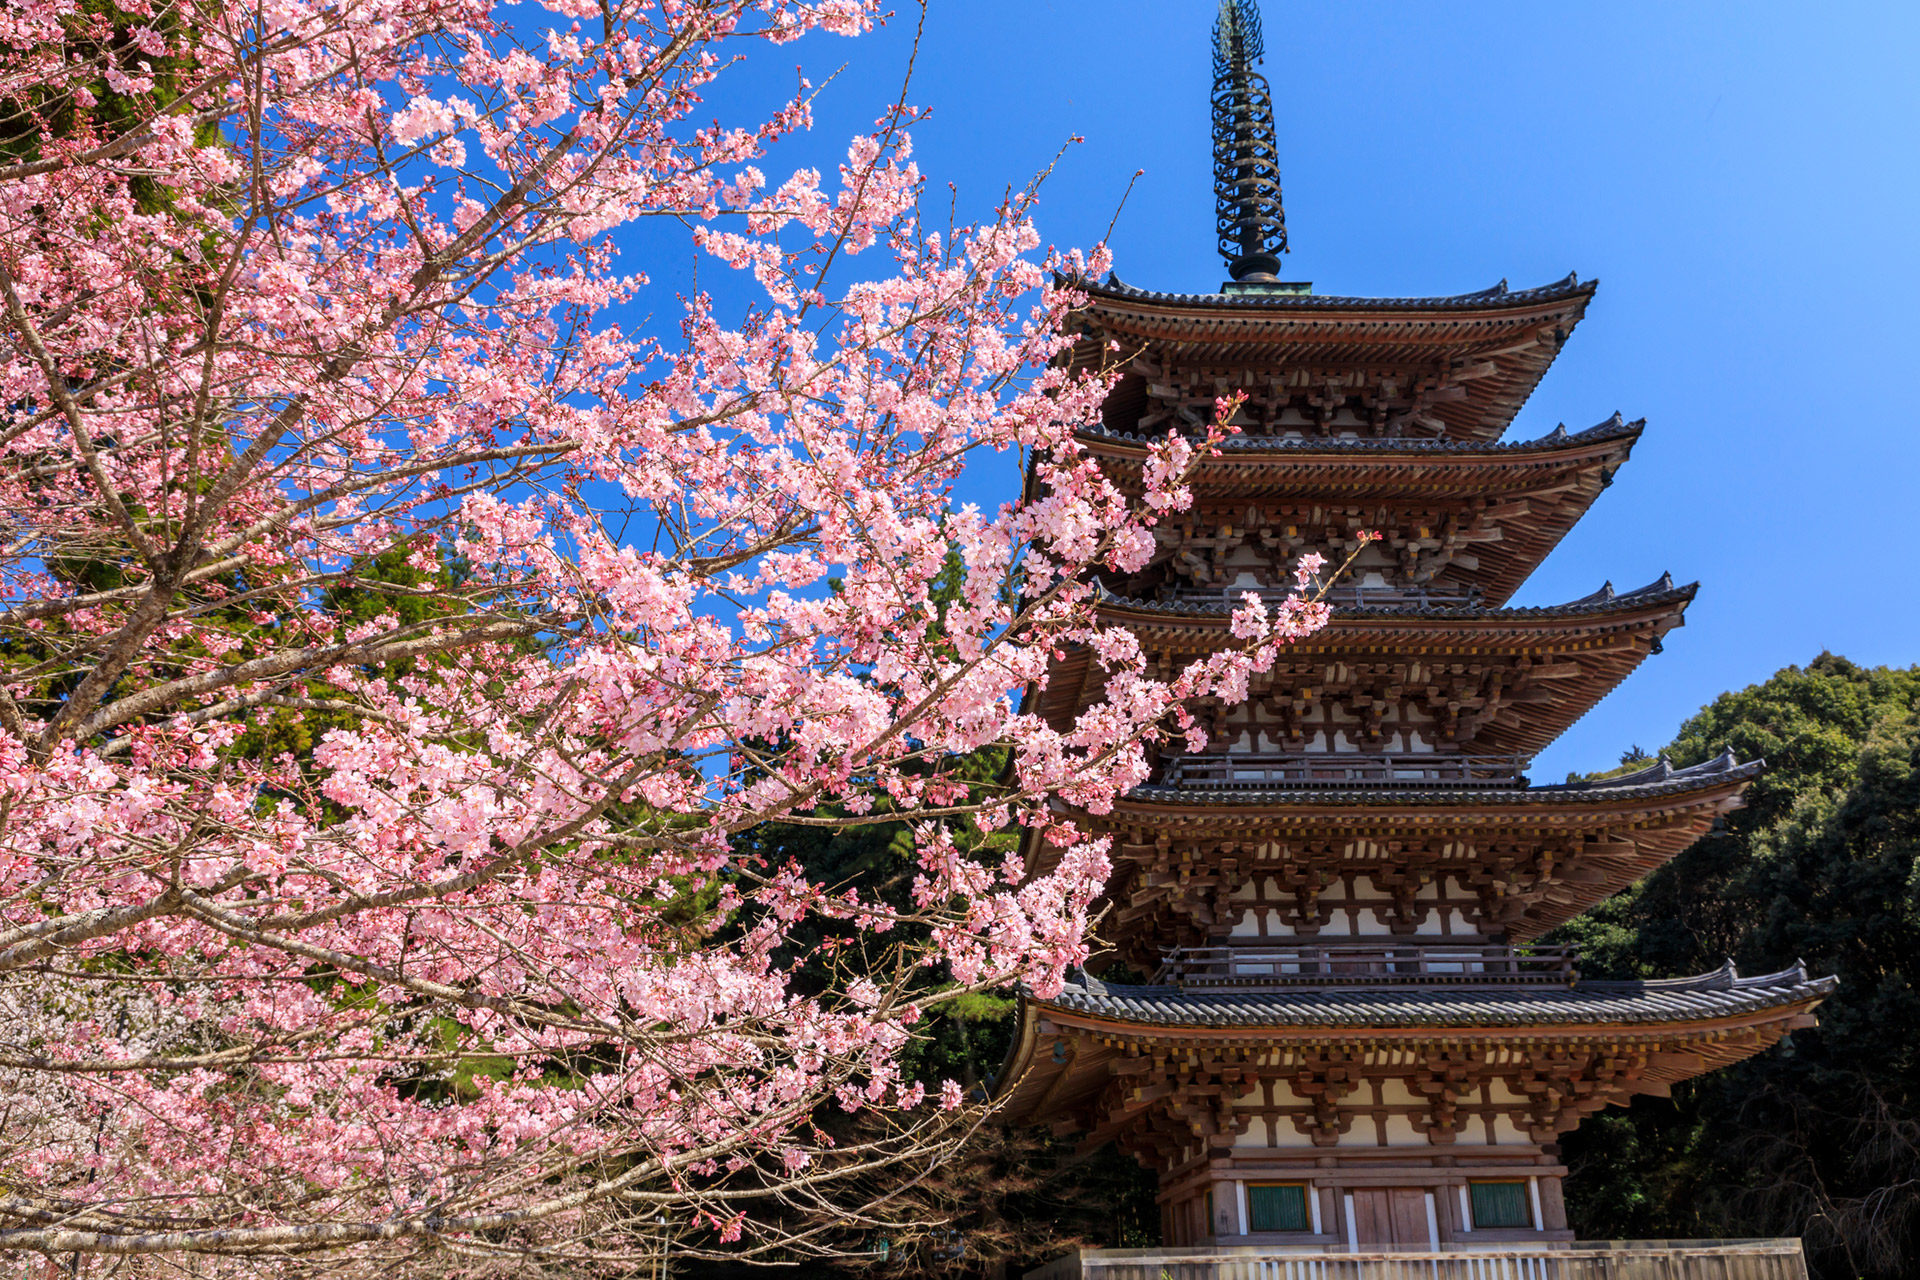 介紹推薦的京都拍照景點